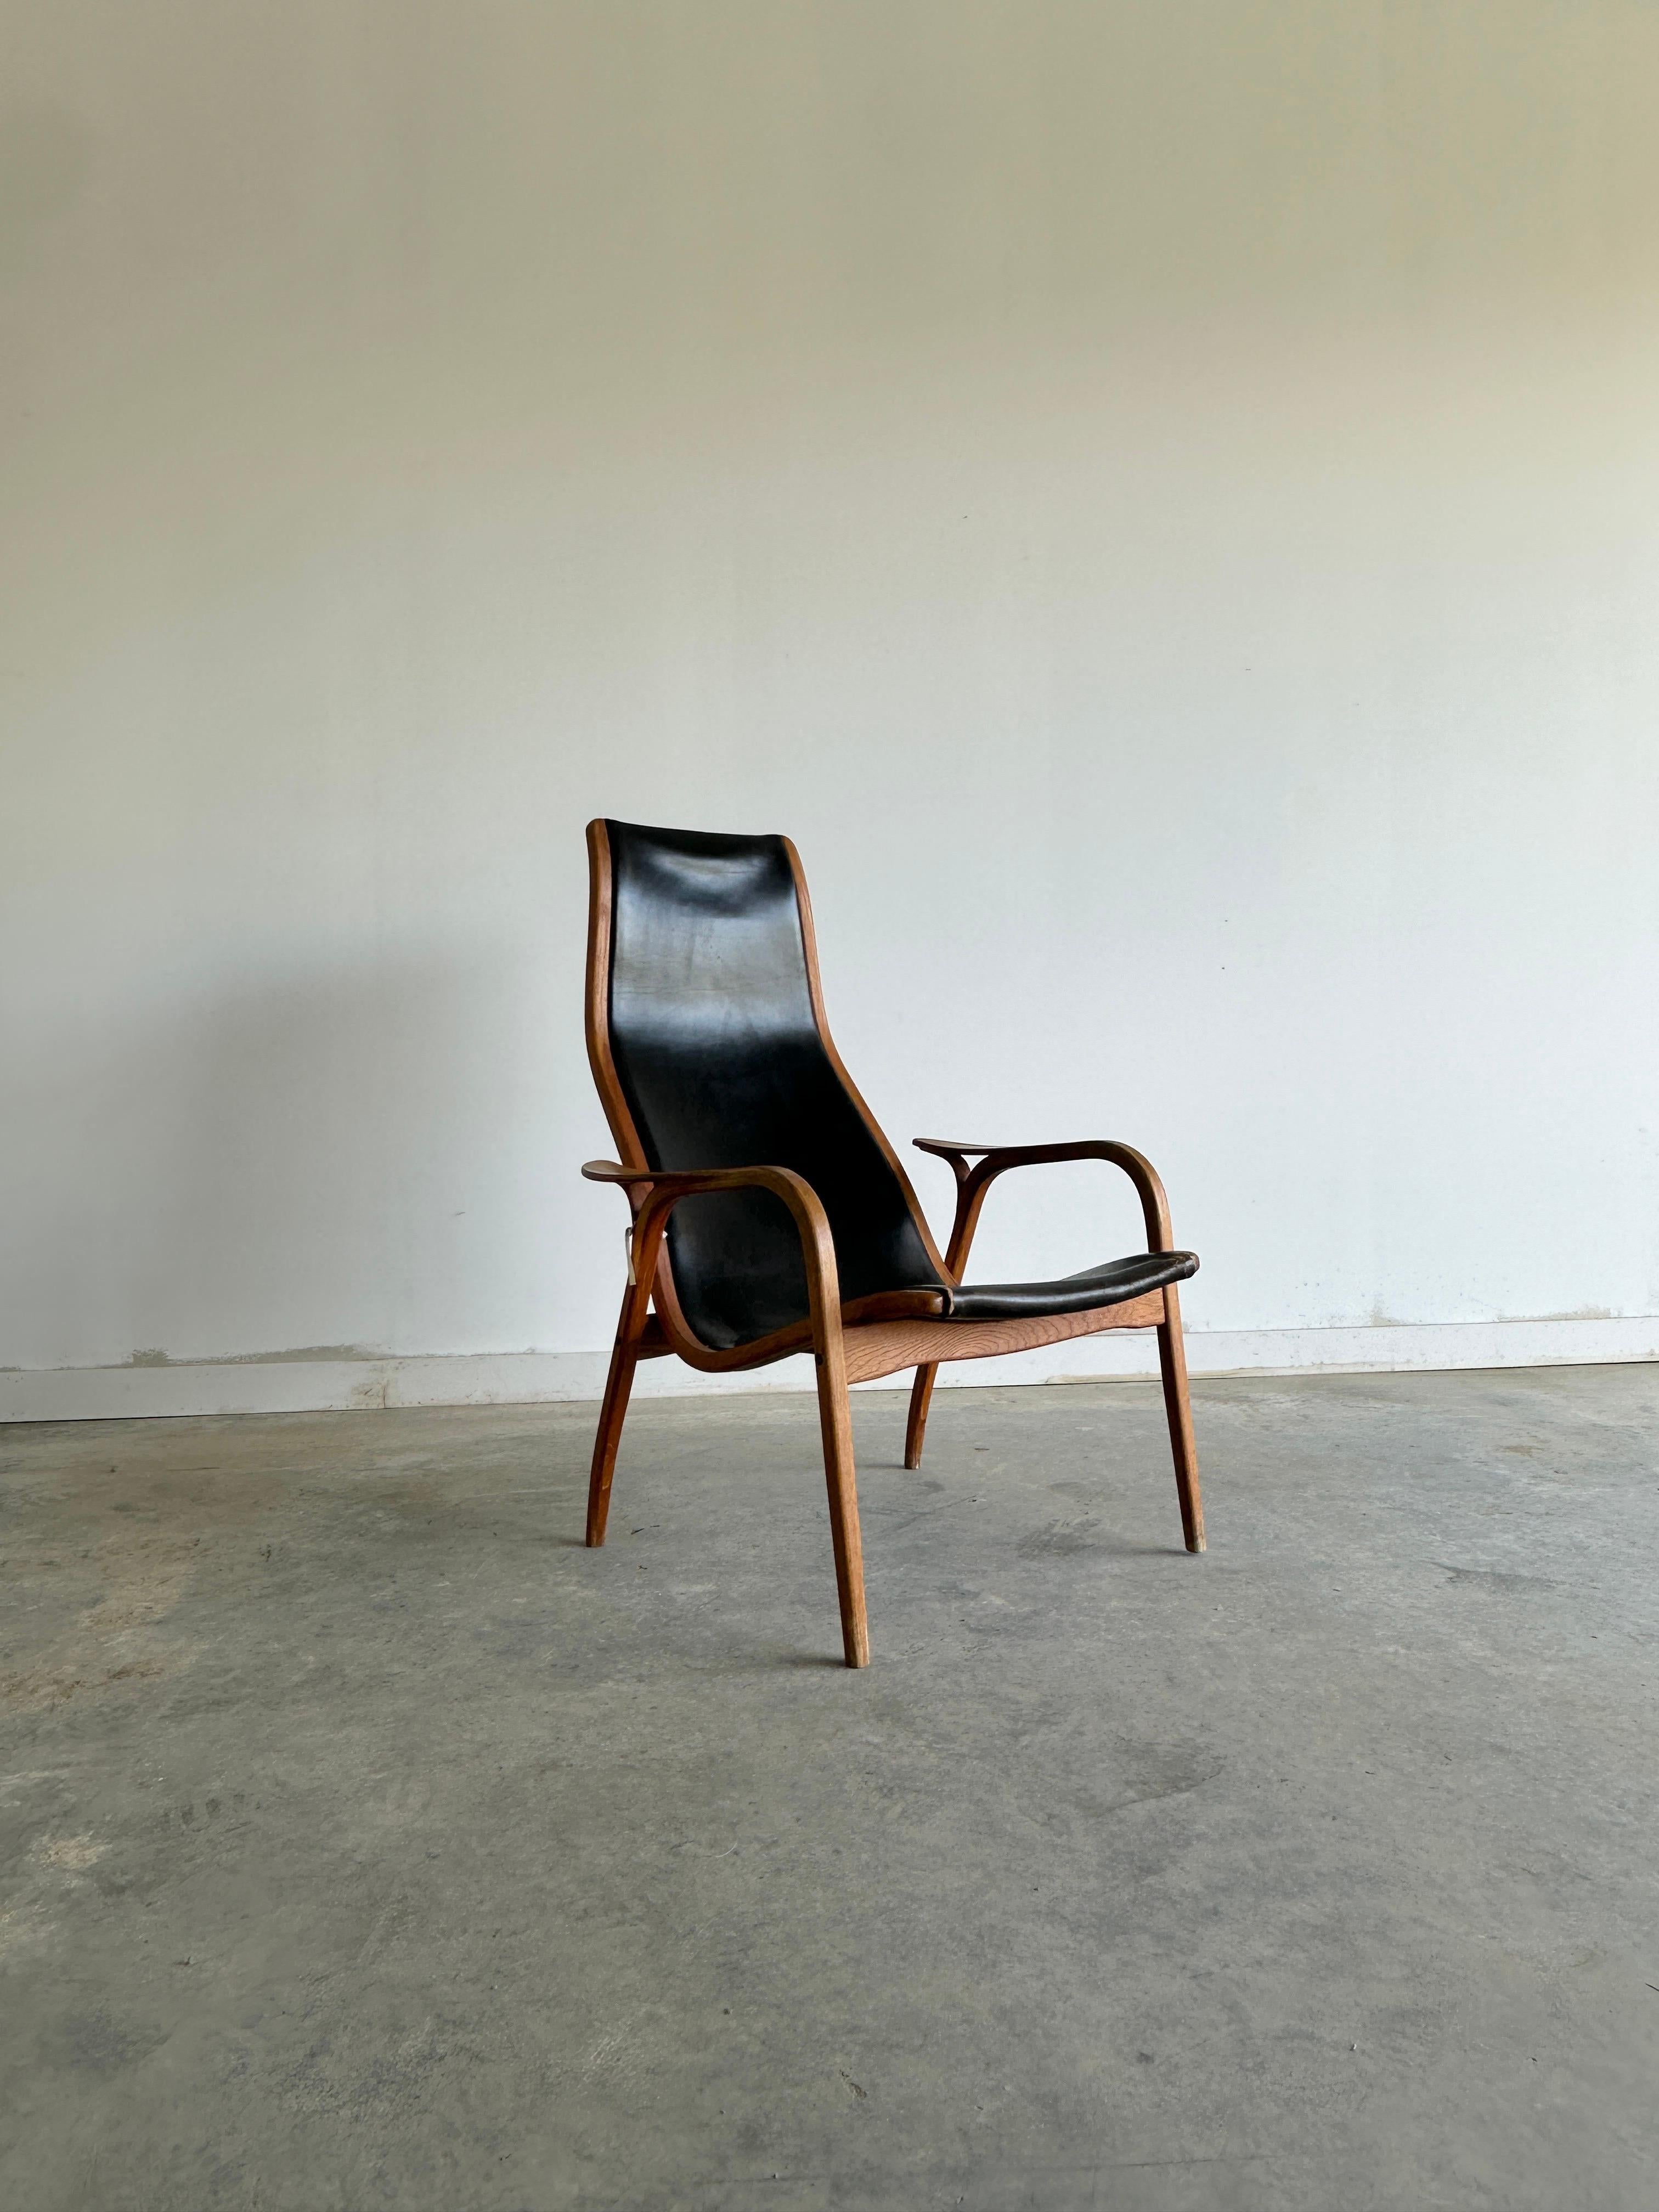 Der Lamino Stuhl von Yngve Ekström für Swedese ist ein Klassiker des skandinavischen Designs, der Schlichtheit, Komfort und Eleganz vereint. Der Stuhl hat einen geschwungenen Holzrahmen, der eine originale Sitzfläche und Rückenlehne aus schwarzem